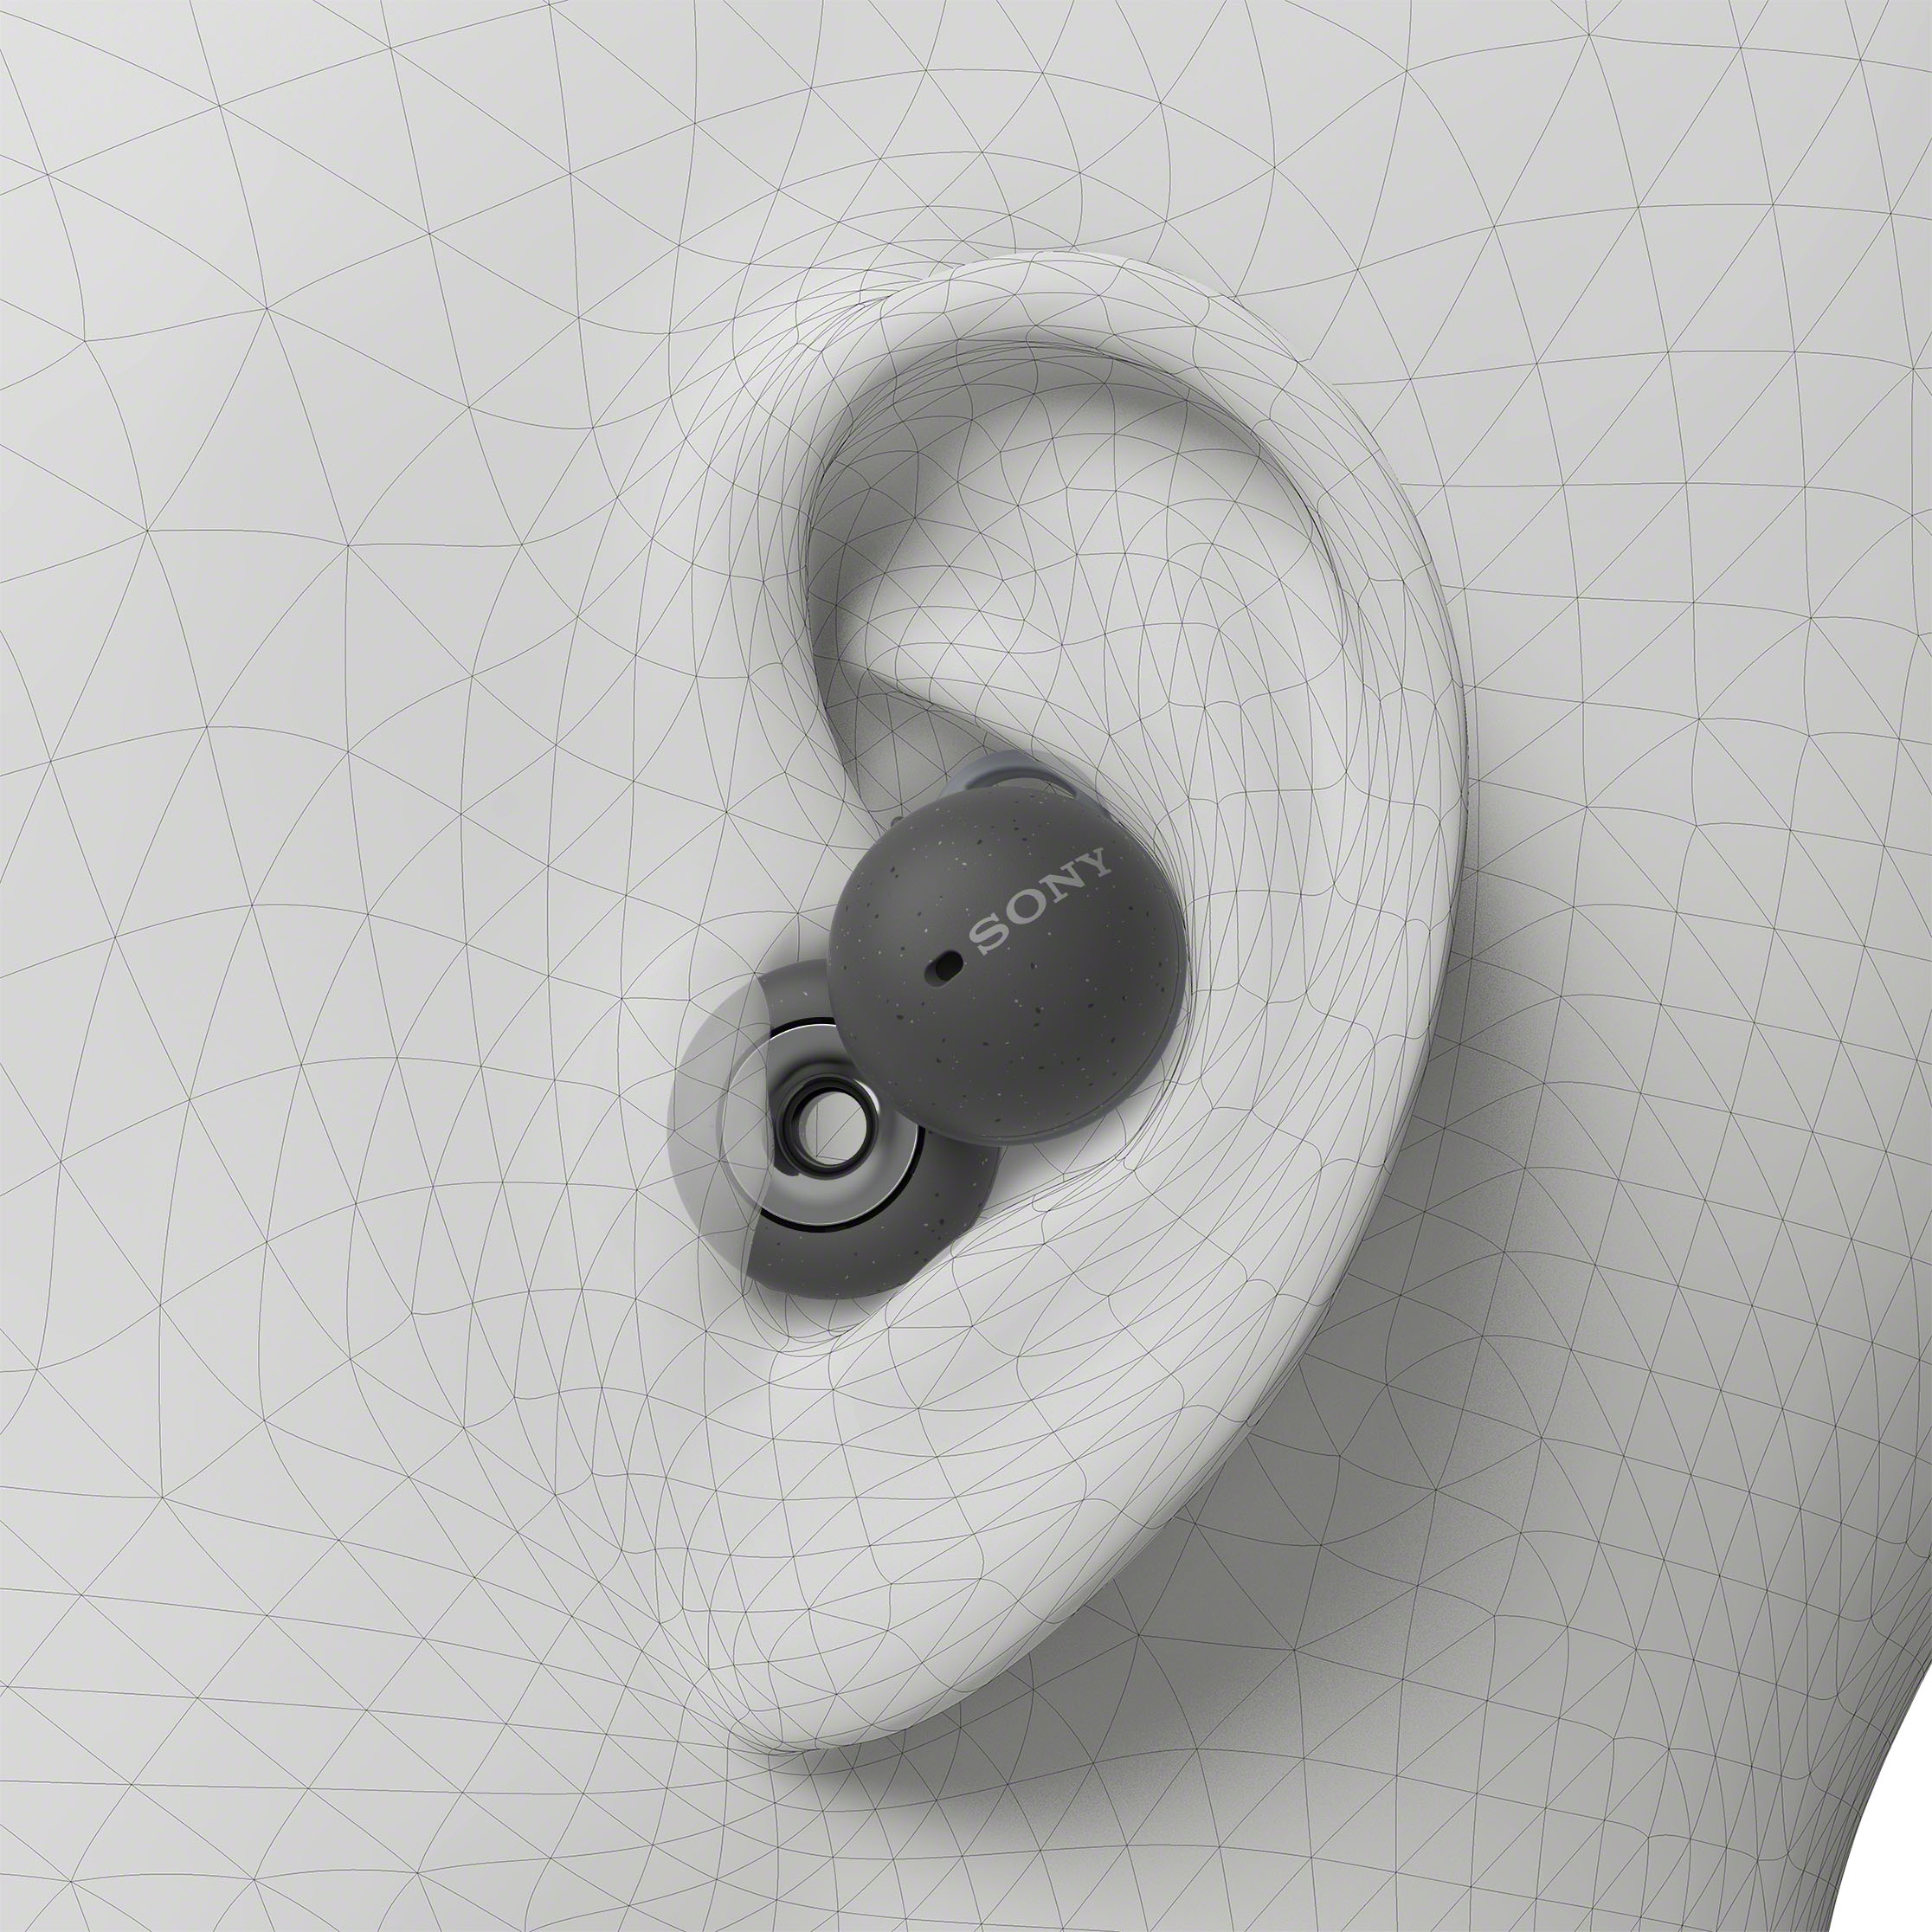 Sony LinkBuds True Wireless Open-Ear Earbuds White WFL900/W - Best Buy